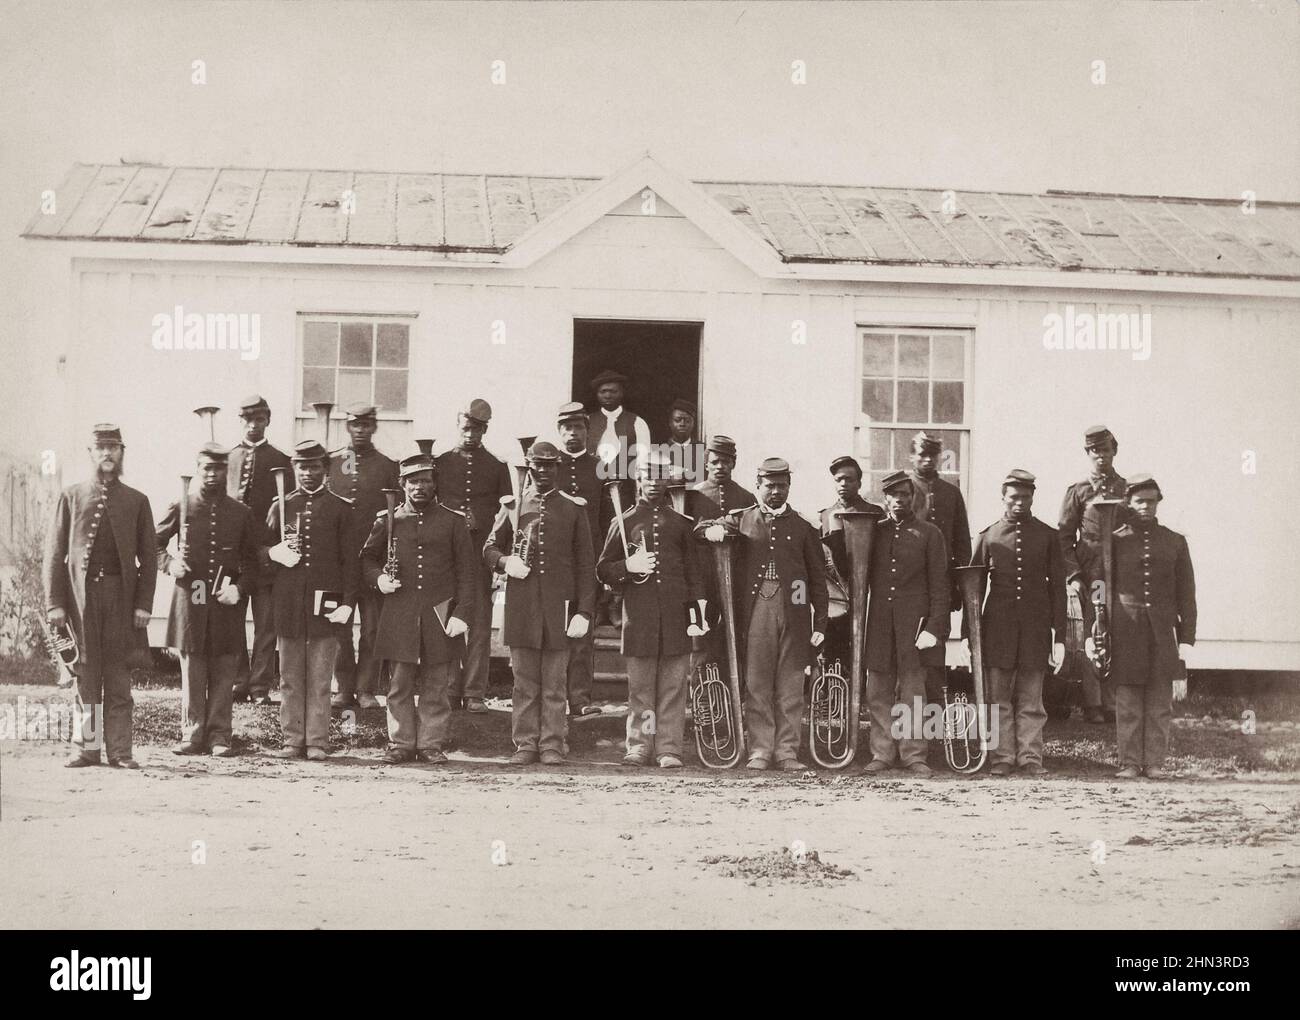 Amerikanischer Bürgerkrieg. Band von 107th US-farbigen Infanterie-Gruppe von zwanzig afroamerikanischen Soldaten mit Musikinstrumenten in Arlington, Virginia. 186 Stockfoto